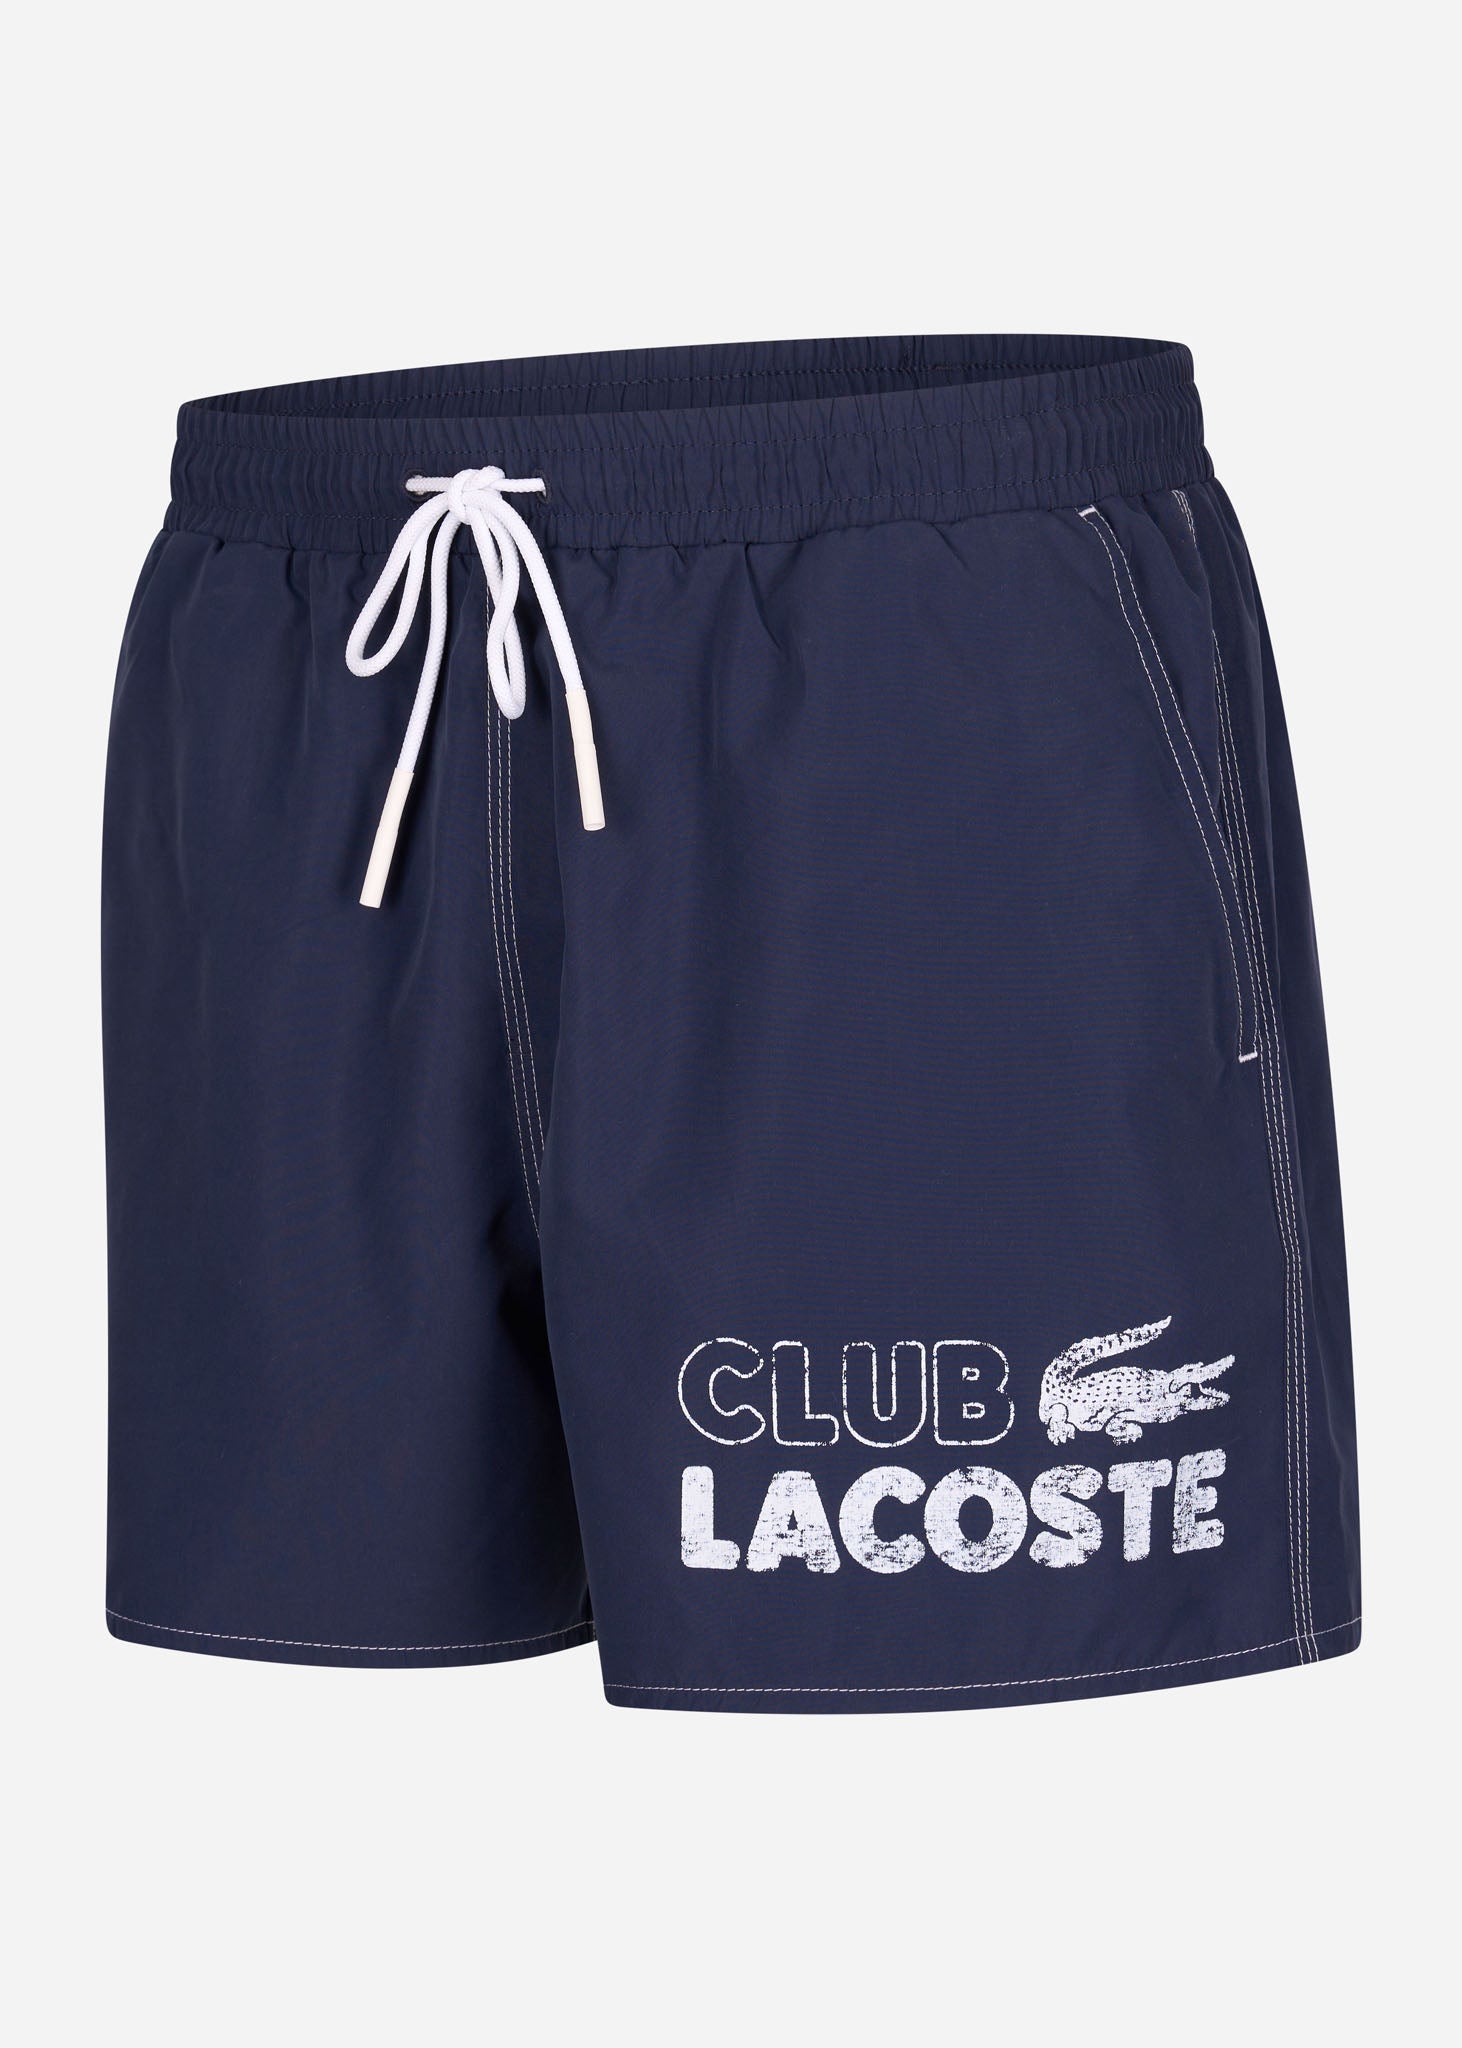 Lacoste Zwembroeken  Club lacoste swimming trunks - navy blue 